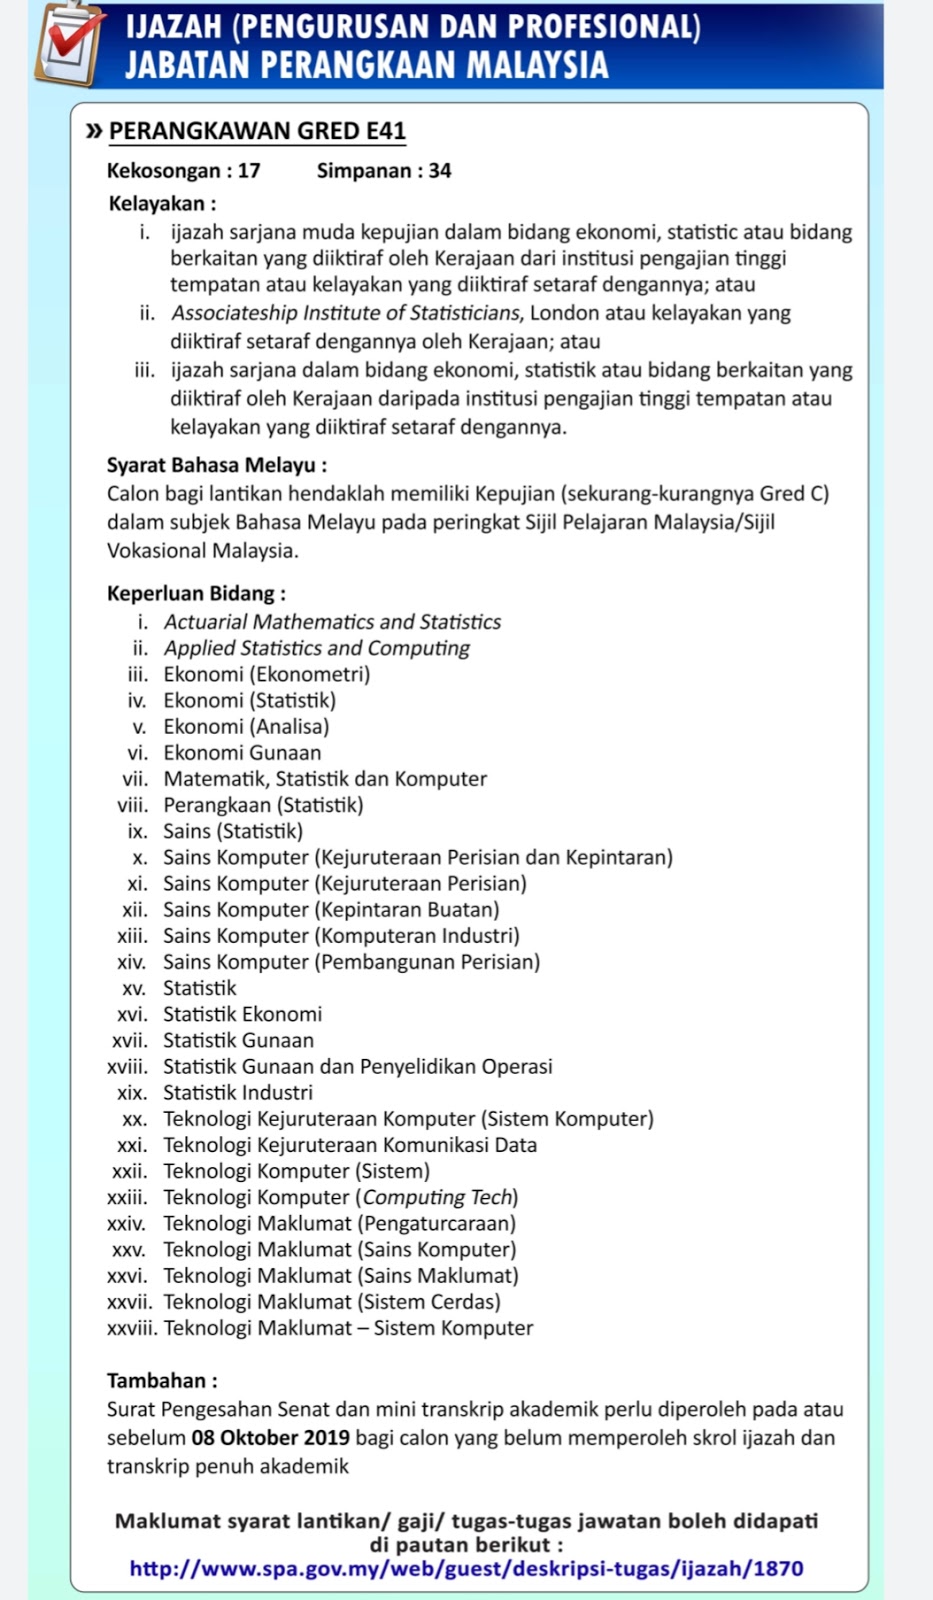 Jawatan Kosong Jabatan Perangkaan Malaysia 2019 - SUMBER 